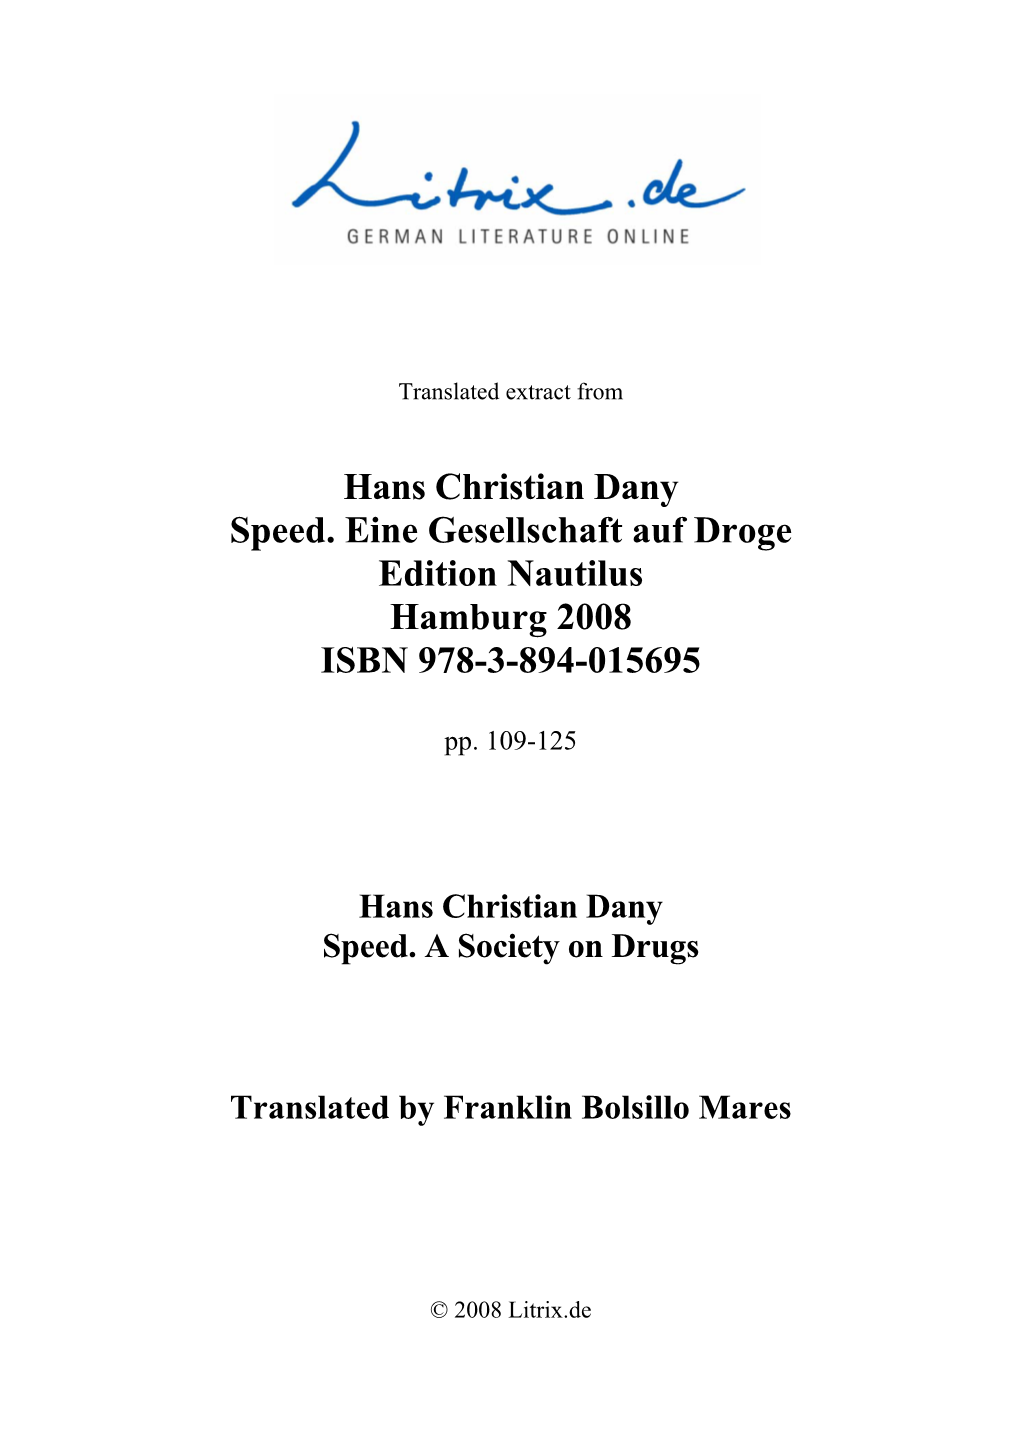 Hans Christian Dany Speed. Eine Gesellschaft Auf Droge Edition Nautilus Hamburg 2008 ISBN 978-3-894-015695